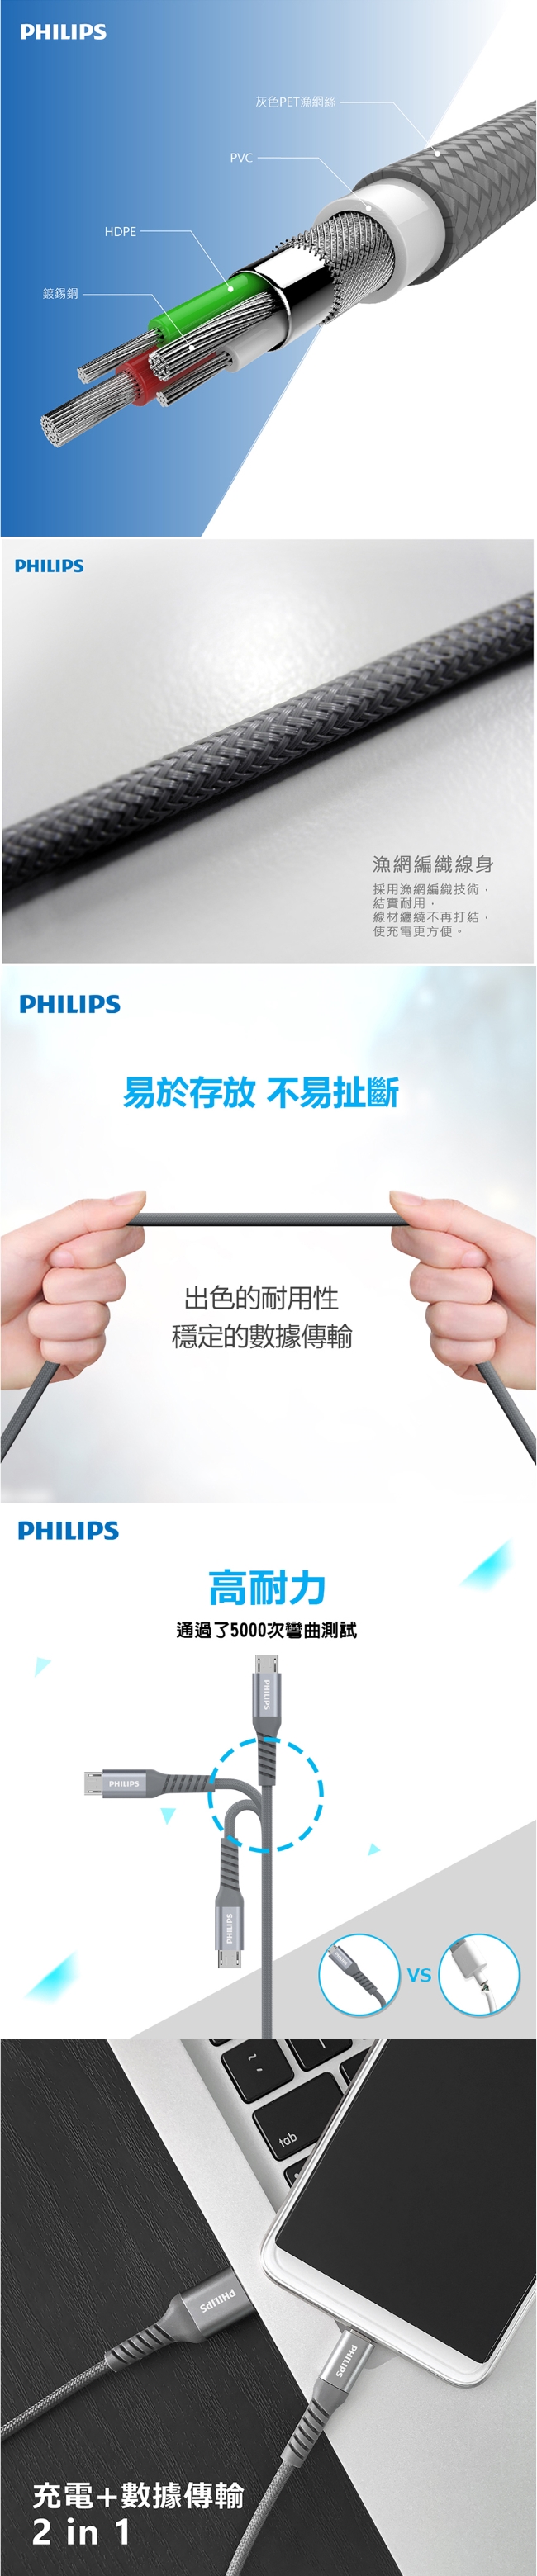 【Philips 飛利浦】125cm Micro USB手機充電線 DLC4543U